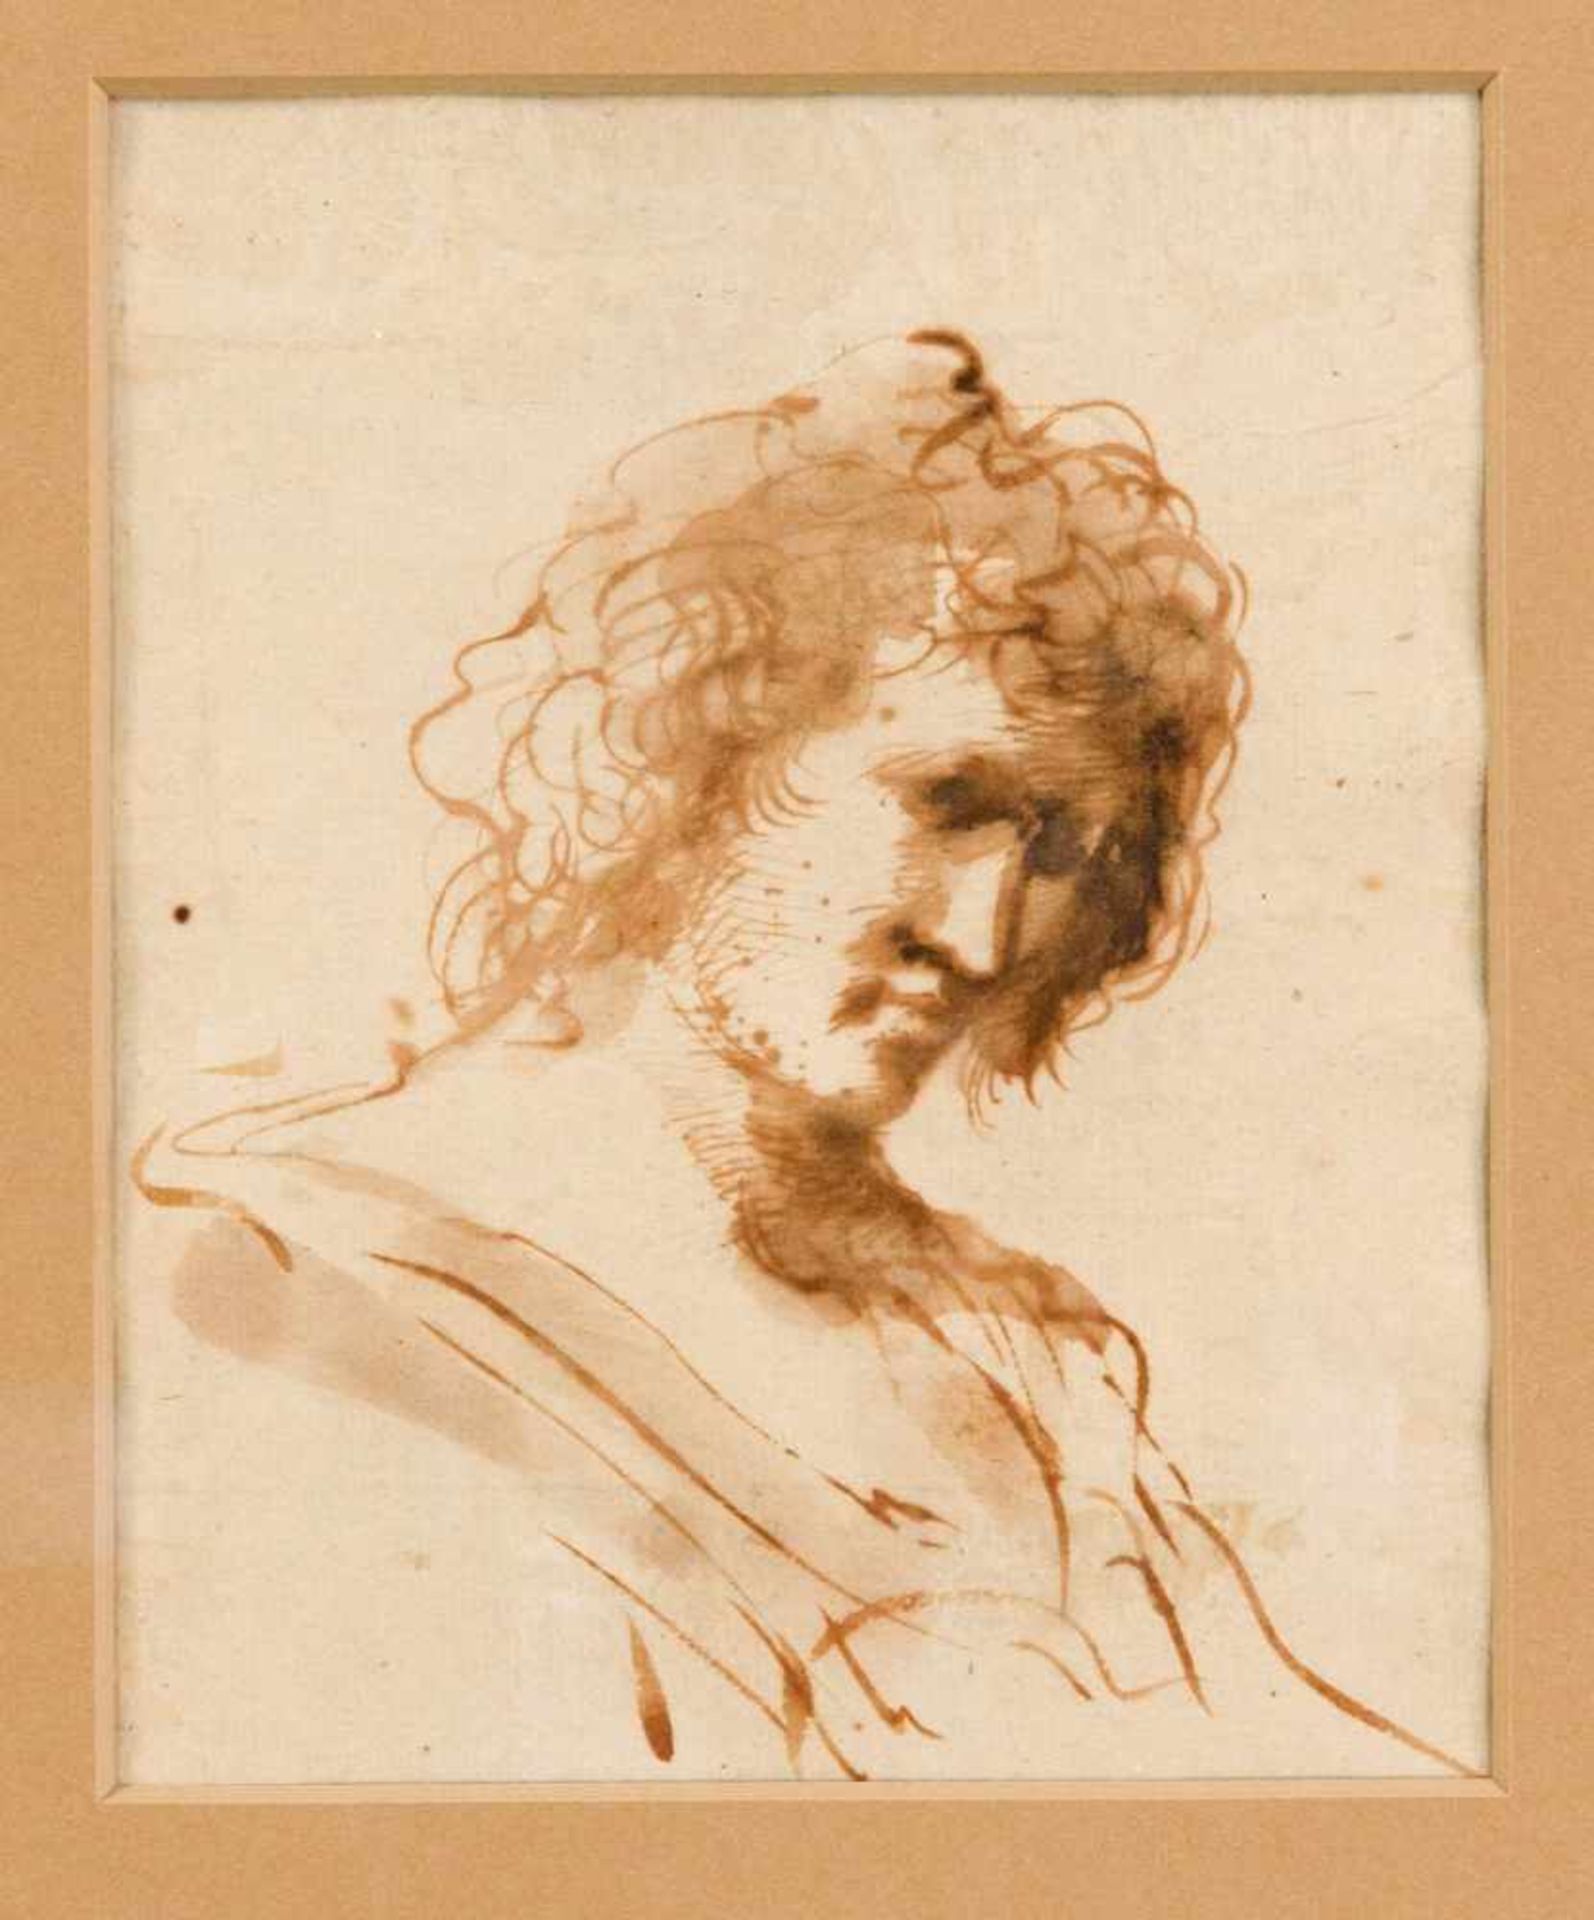 Giovanni Francesco Barbieri, genannt Il Guercino (1591-1666), Werkstatt / Umkreis, Kopfund Schultern